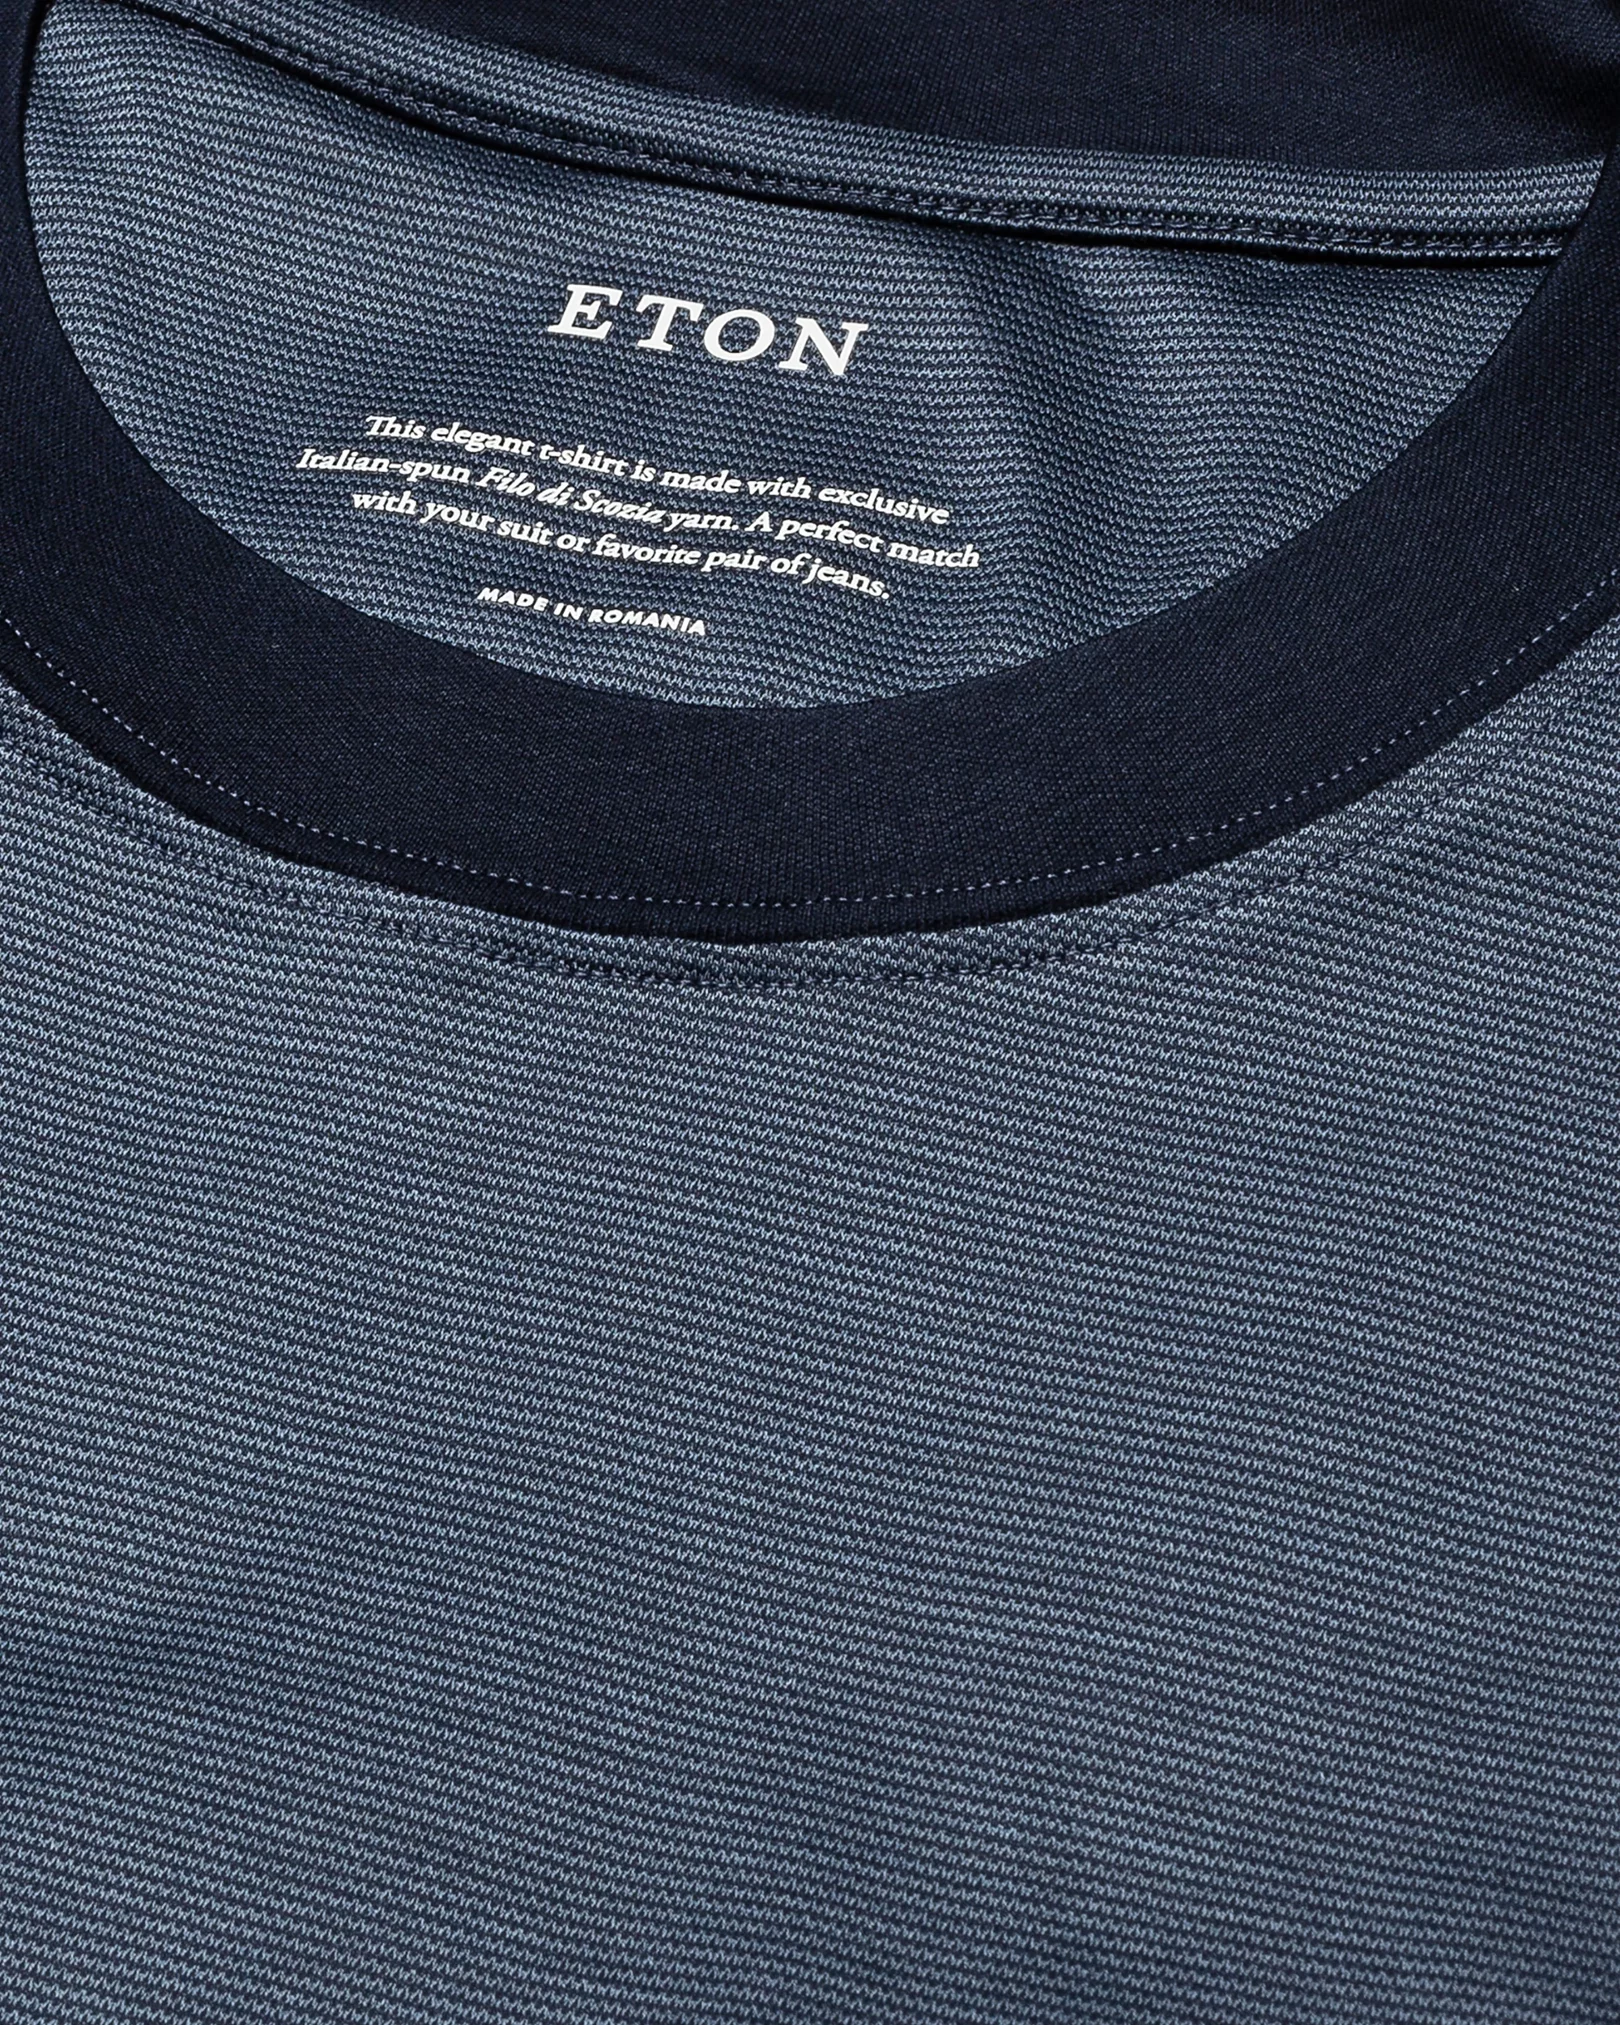 Eton - navy blue interlock jersey t shirt short sleeve t shirt t shirt